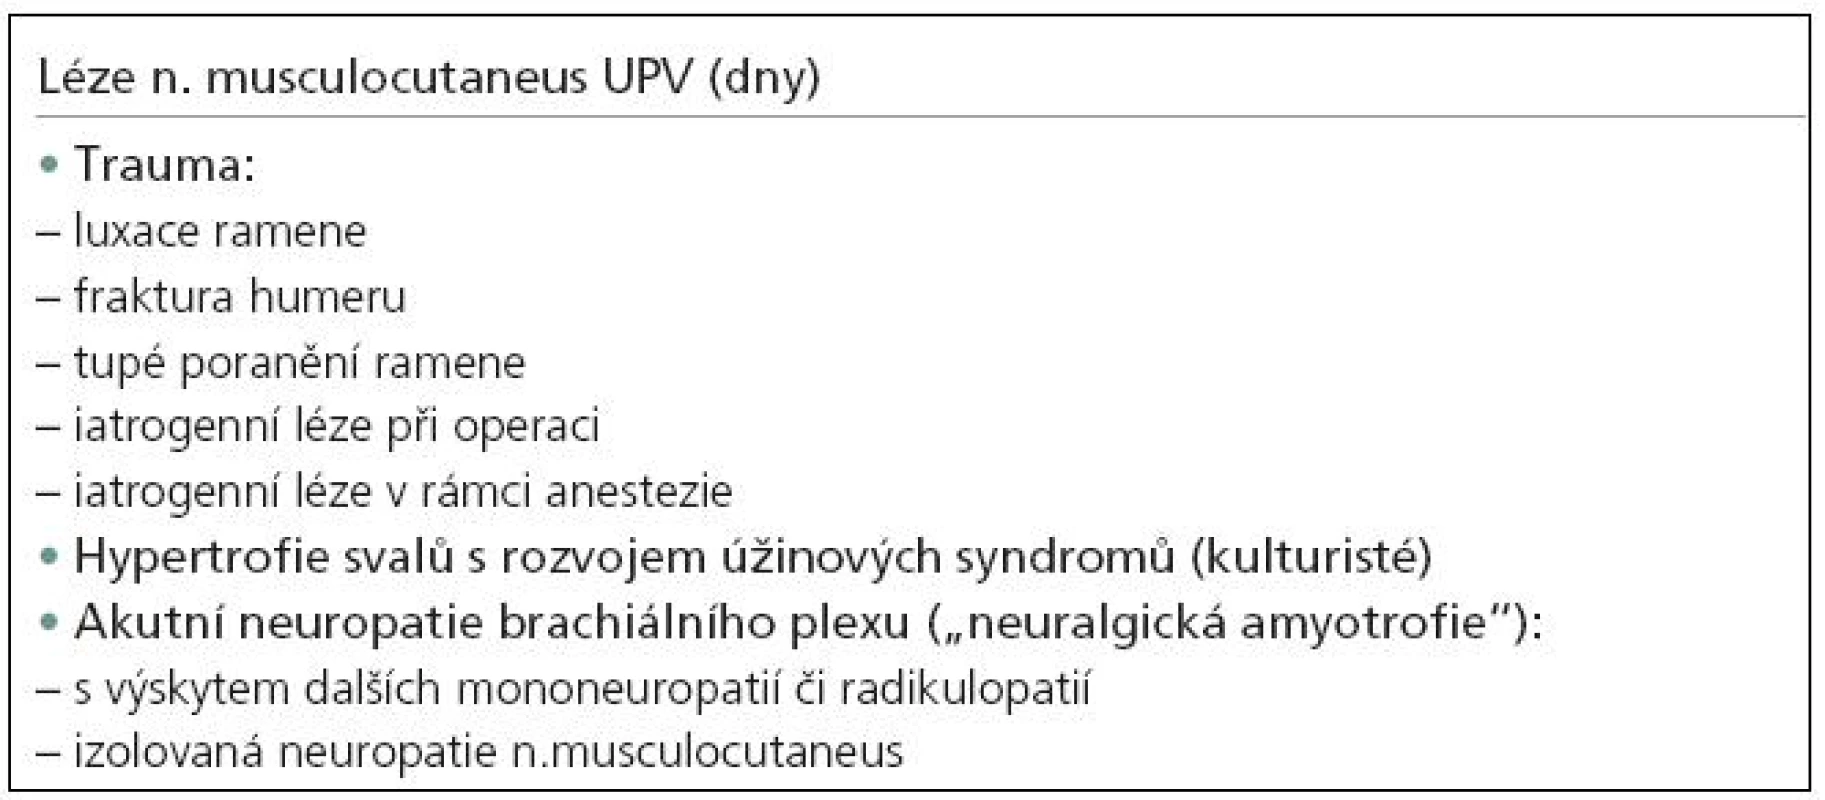 Mononeuropatie n. musculocutaneus – příčiny lézí.